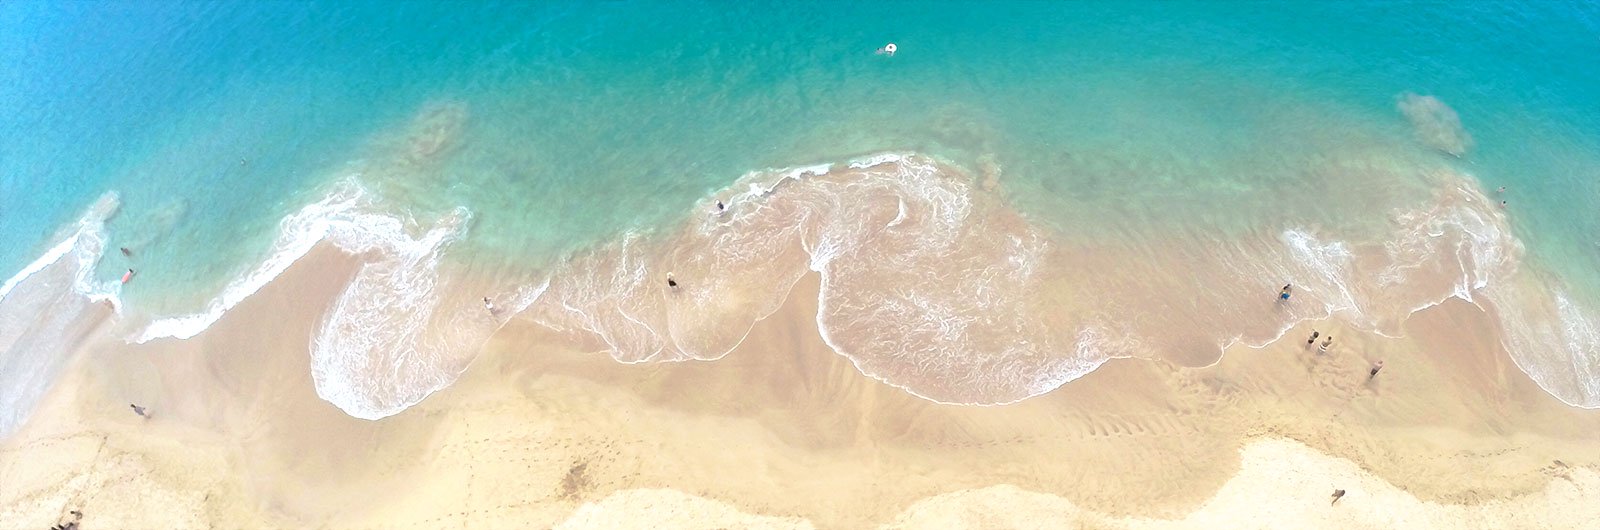 10 Maui Beaches Worth Sharing